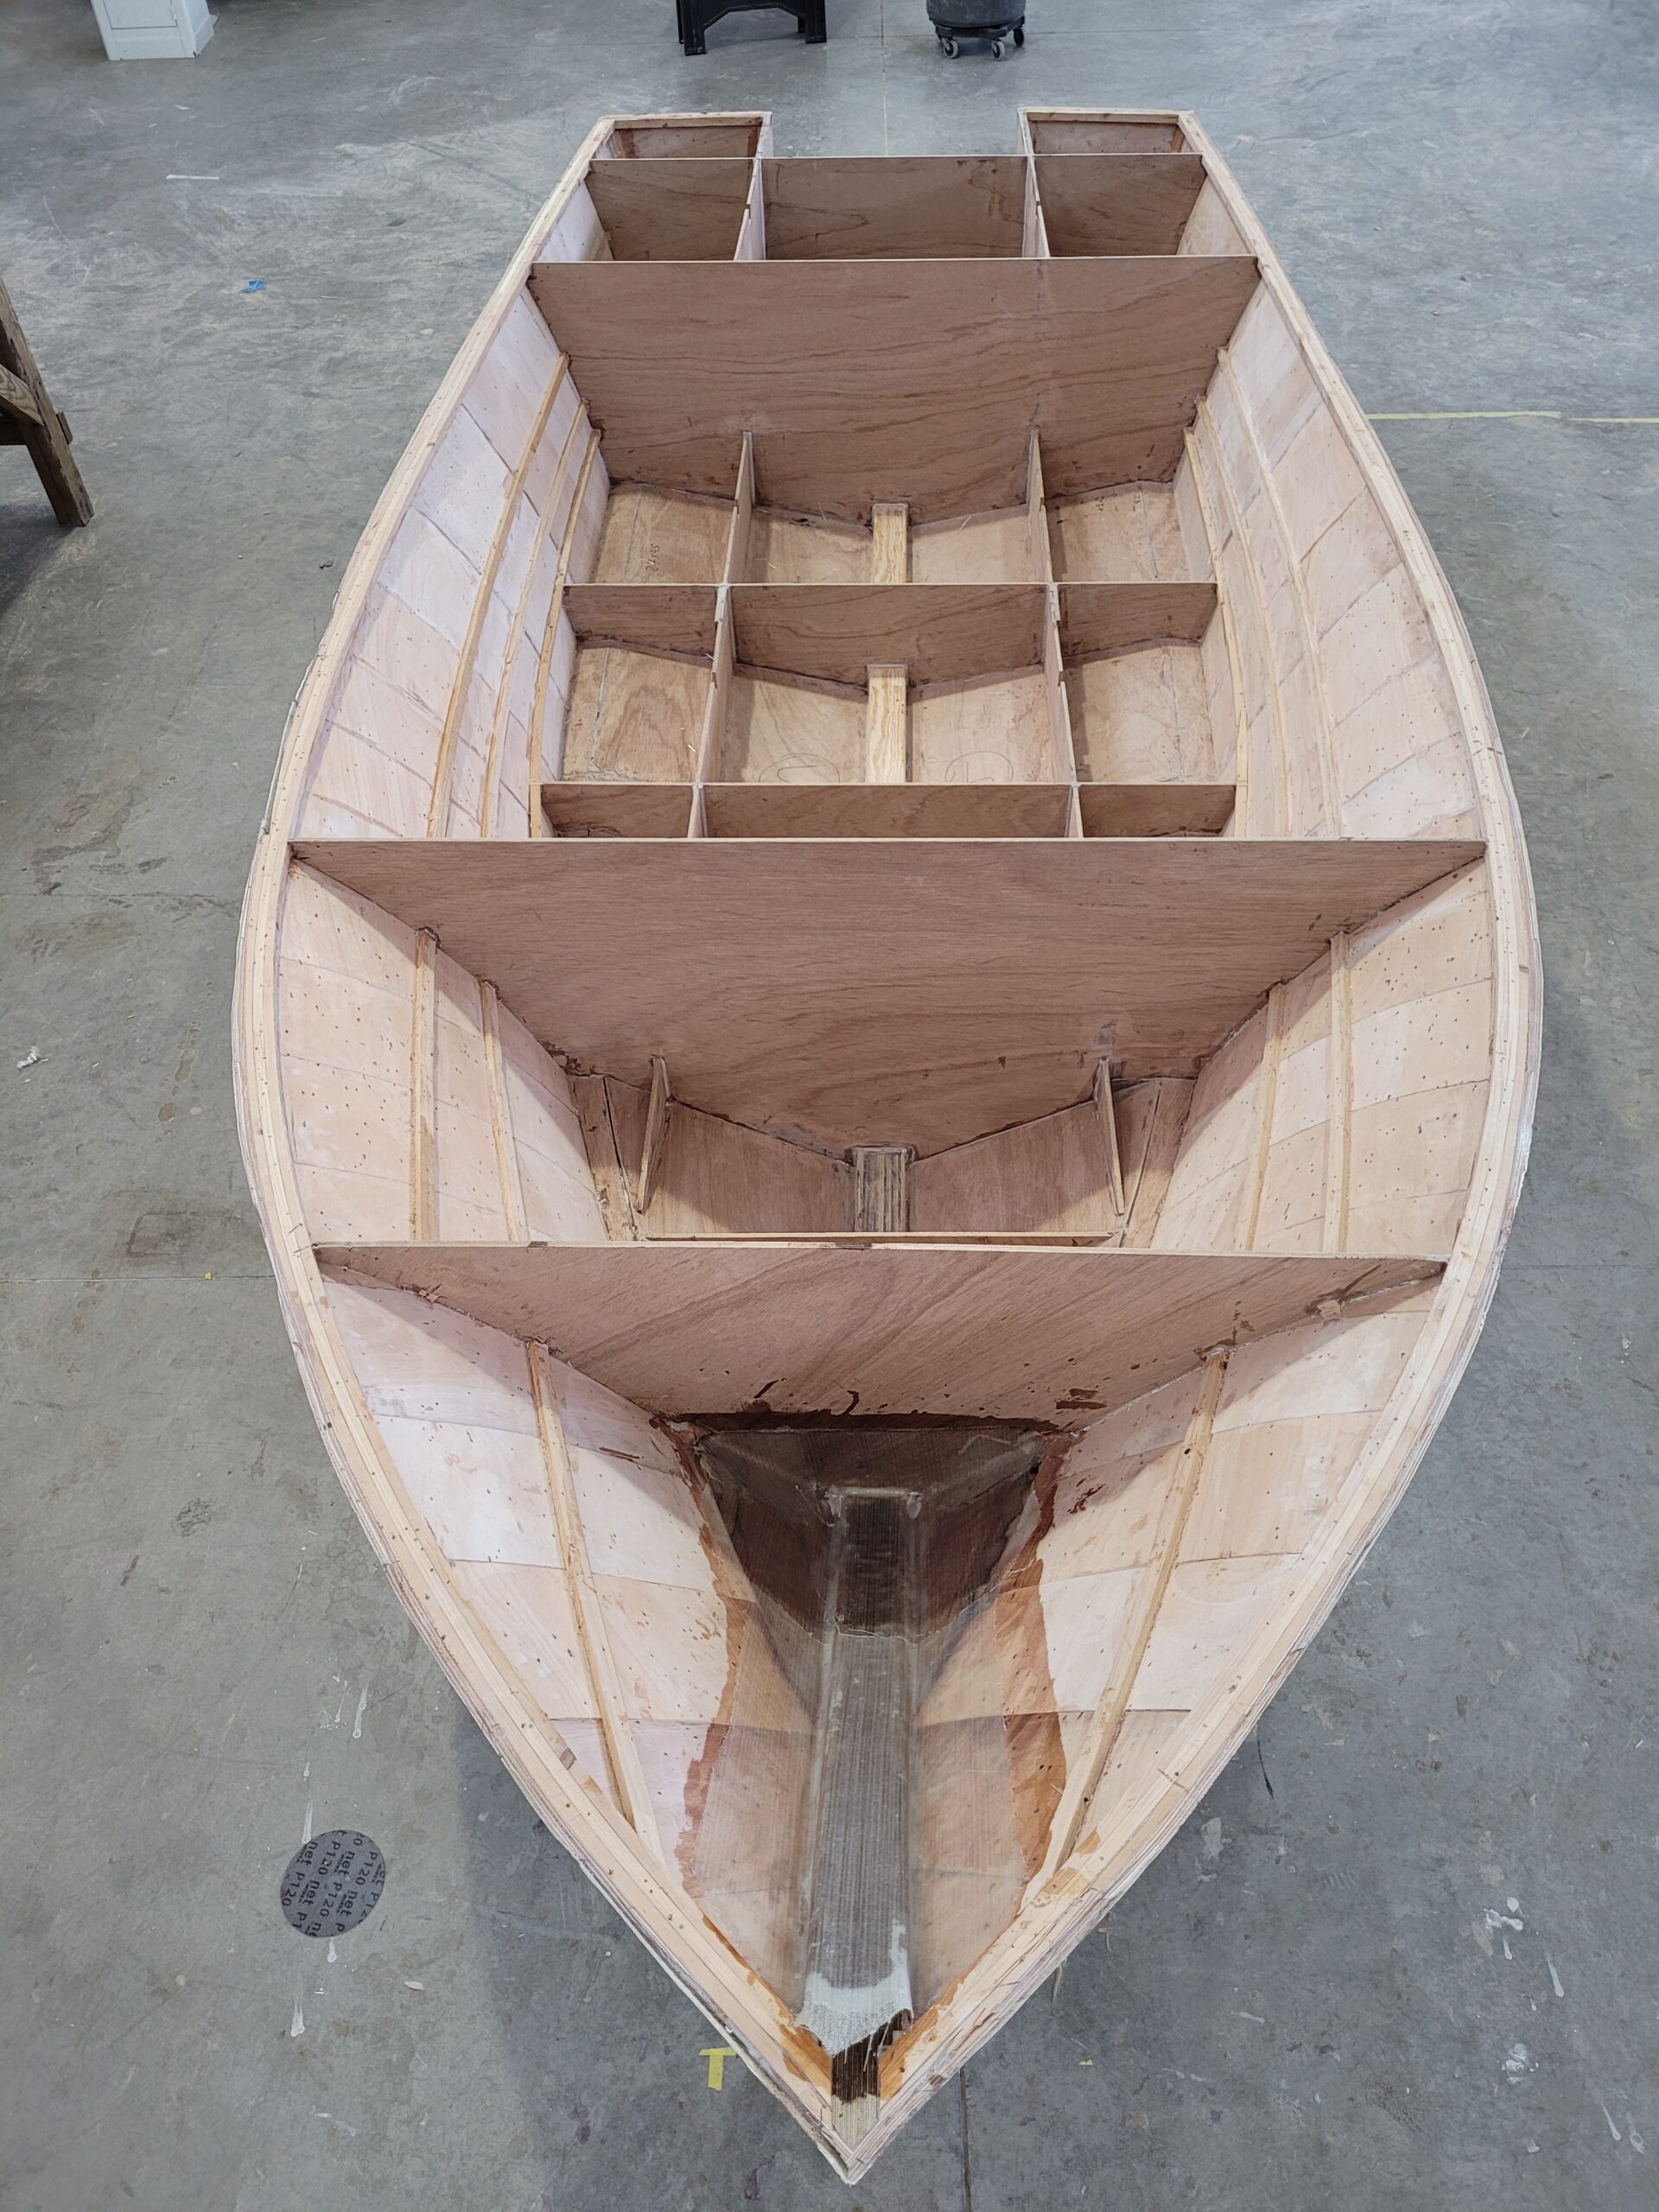 V bottom plywood boat plans - Build a Boat - Carolina Bay 17 Boat Design -  Salt Boatworks